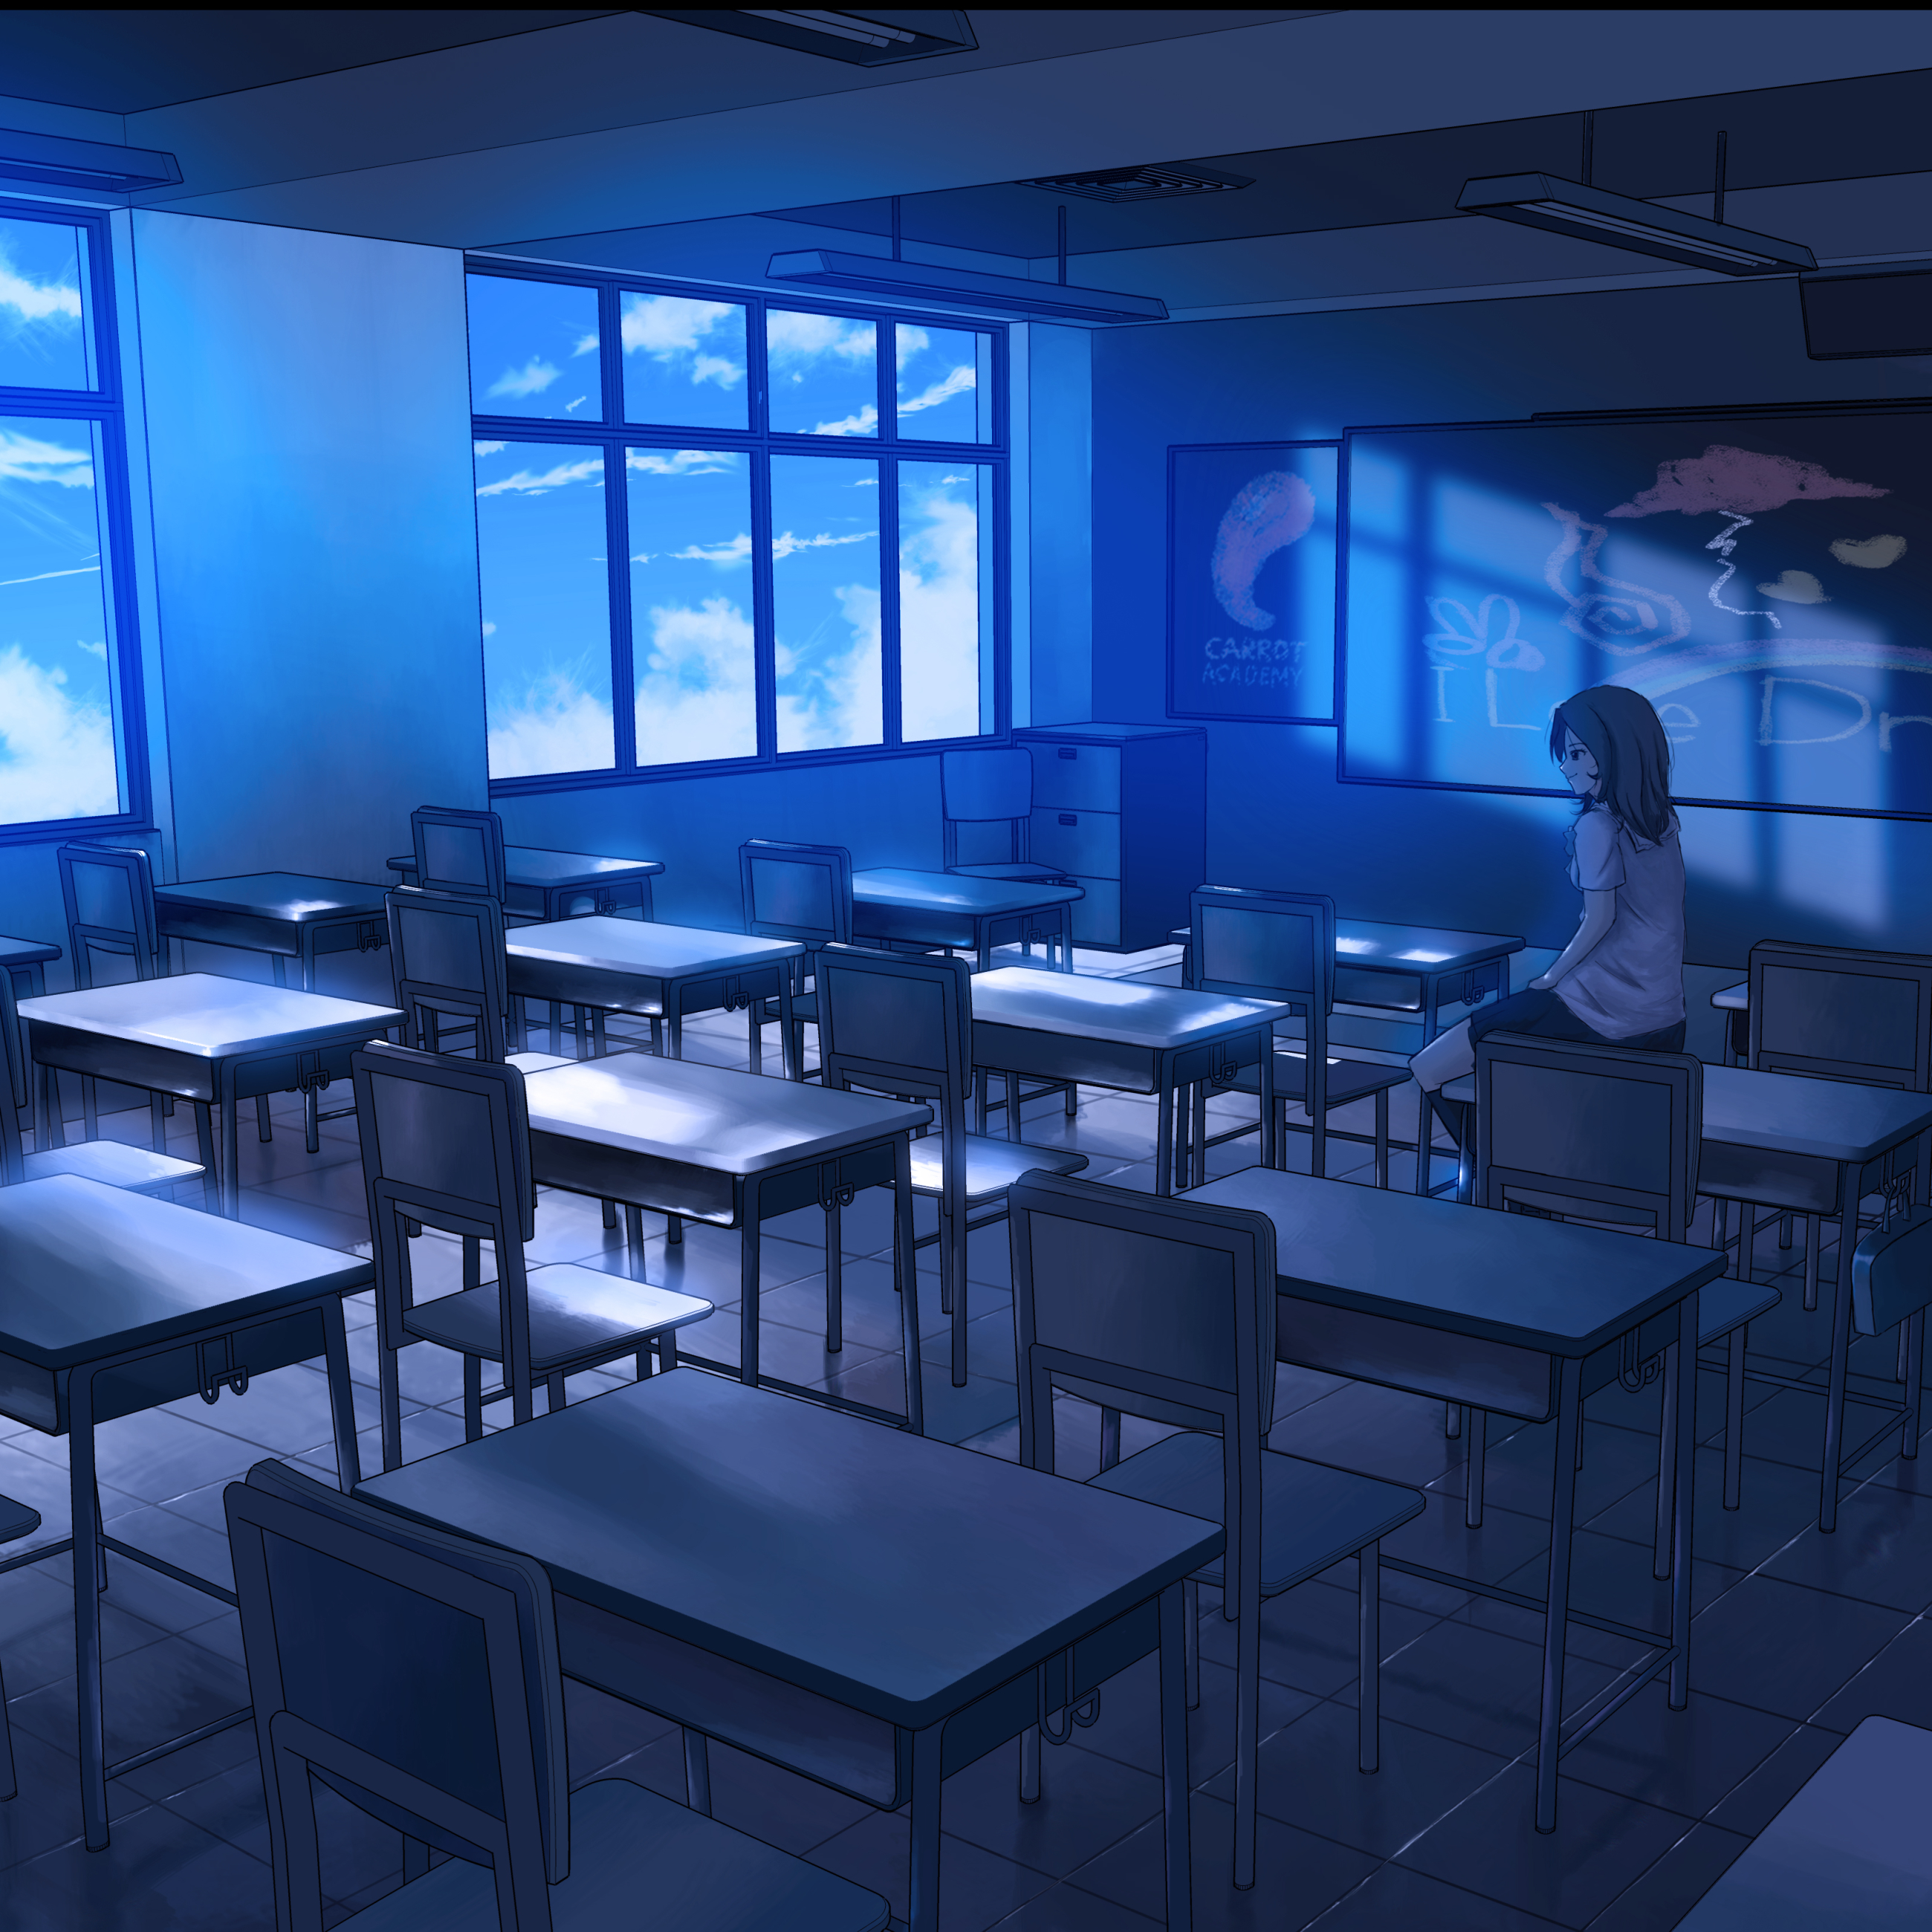 Blue Sky Classroom by Dias Mardianto